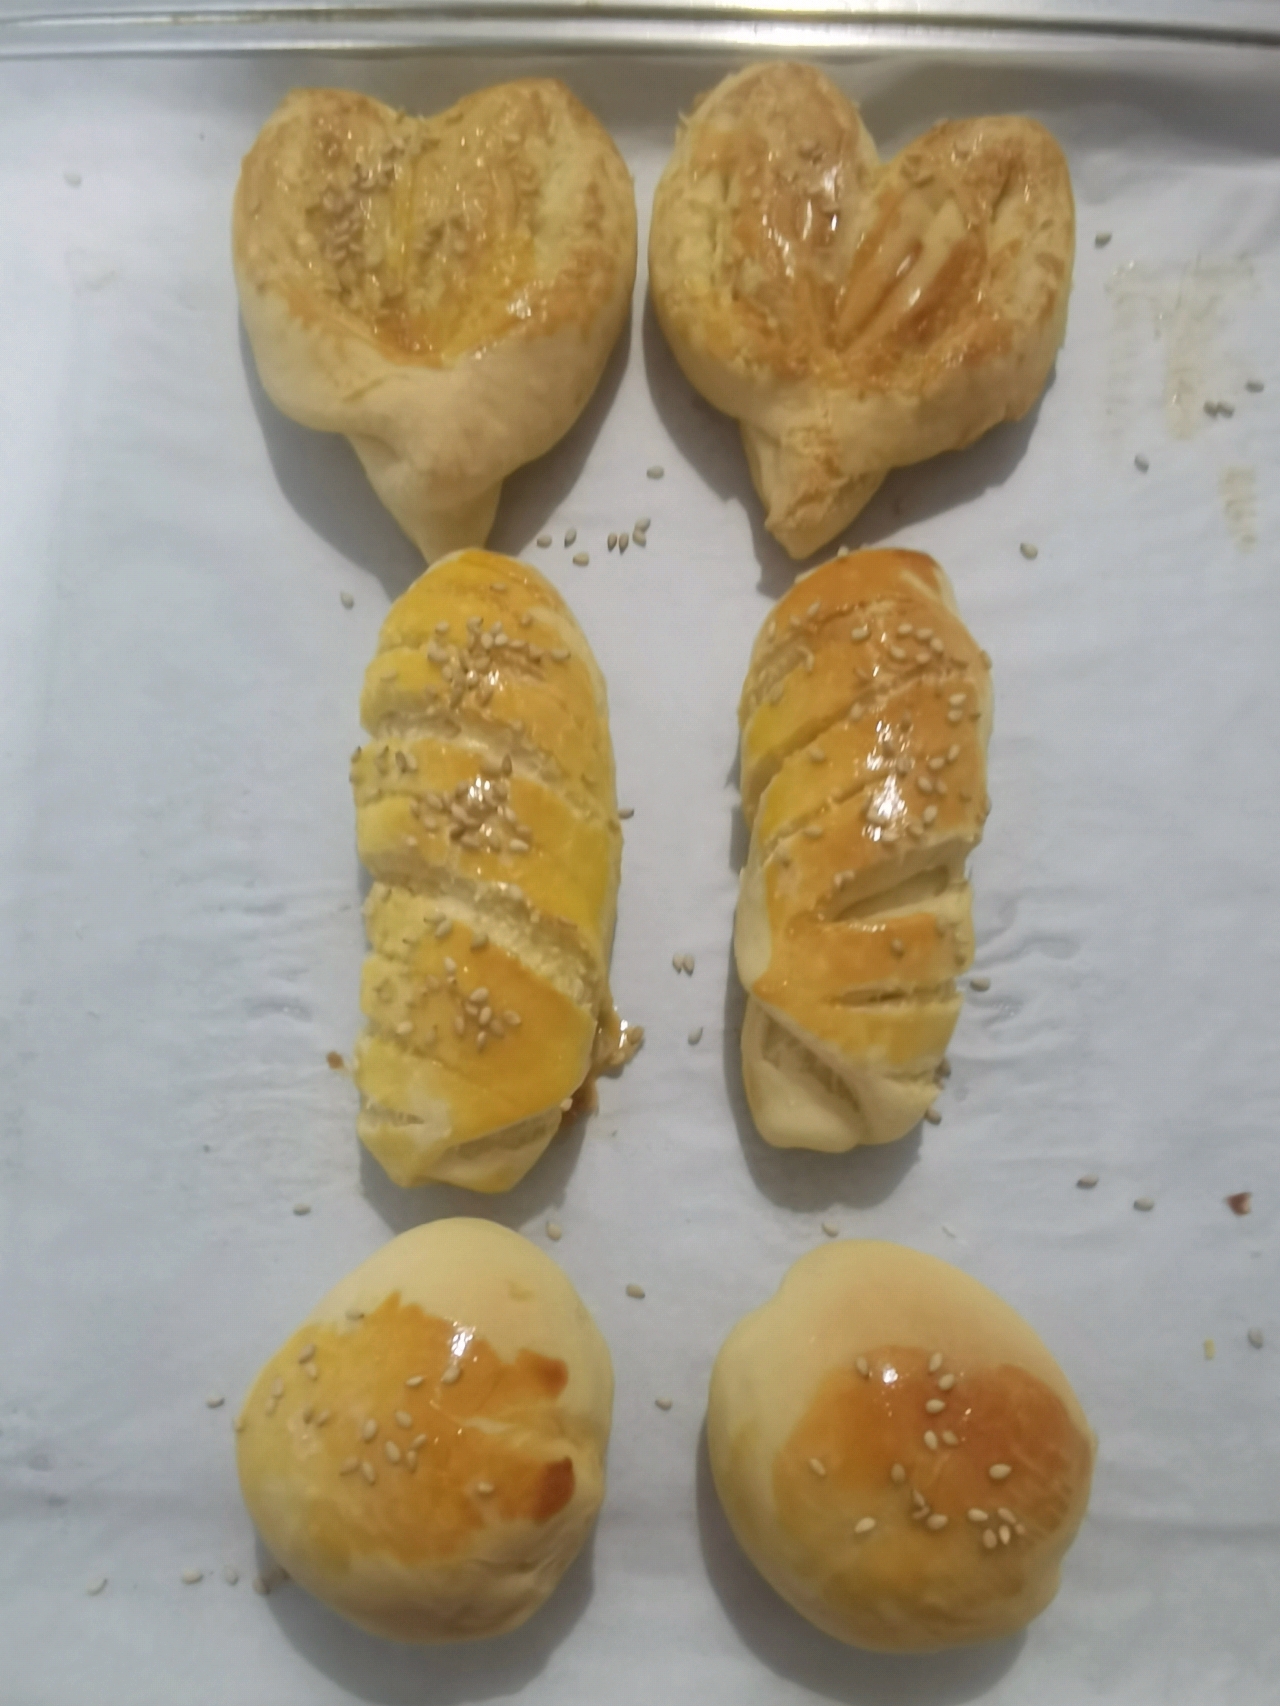 椰蓉小面包